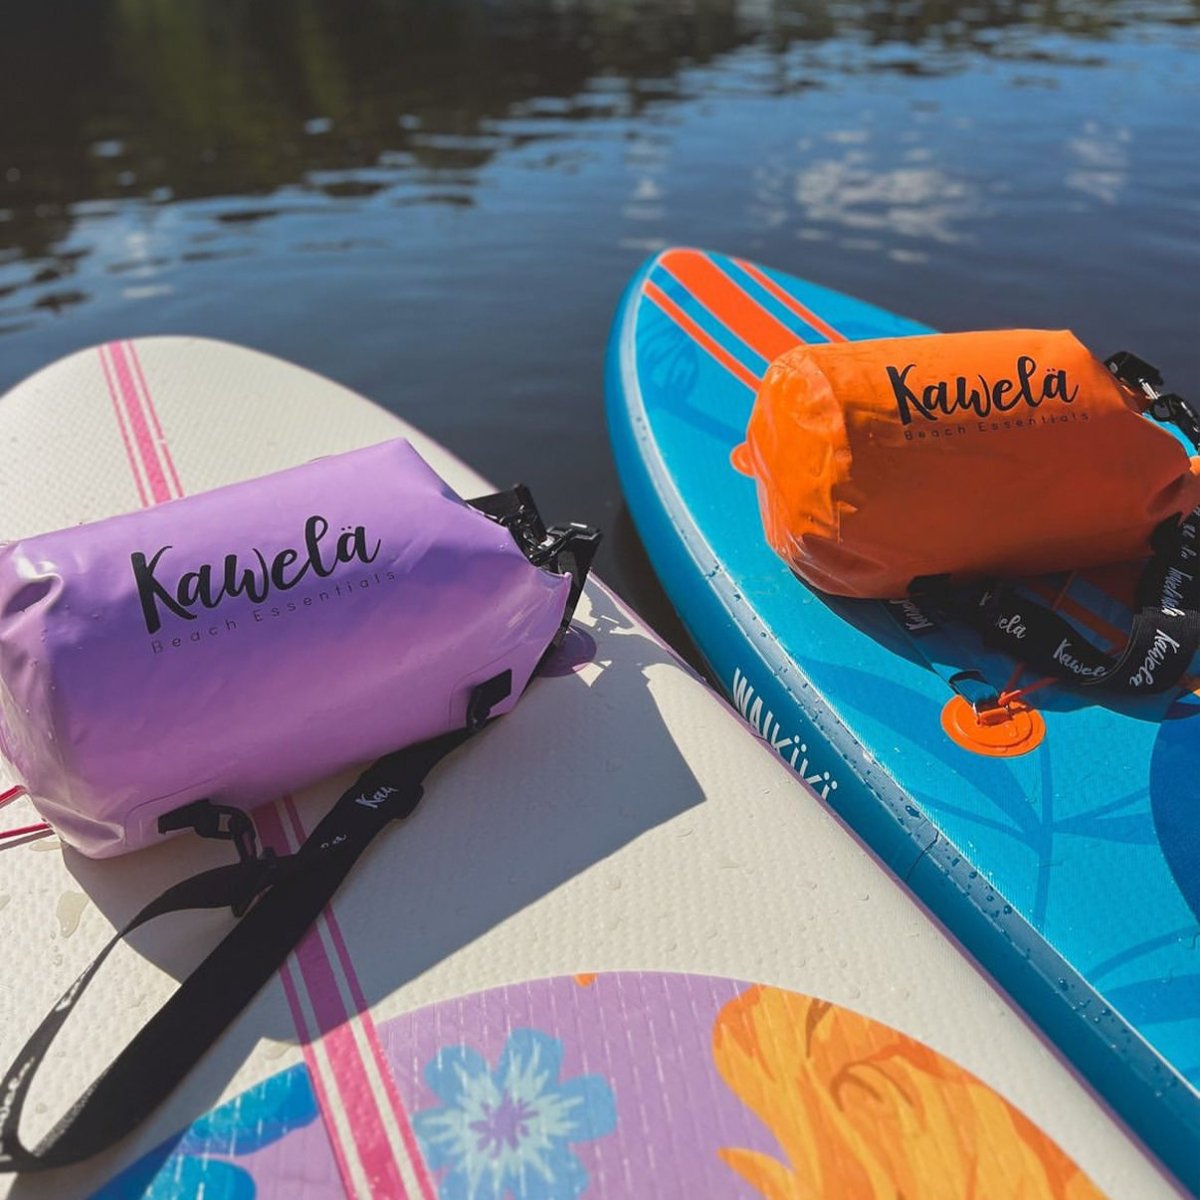 Hana Mauve: Paddleboard Gonflable 10'6" Haut de Gamme Édition Kawela - Quebec SUP